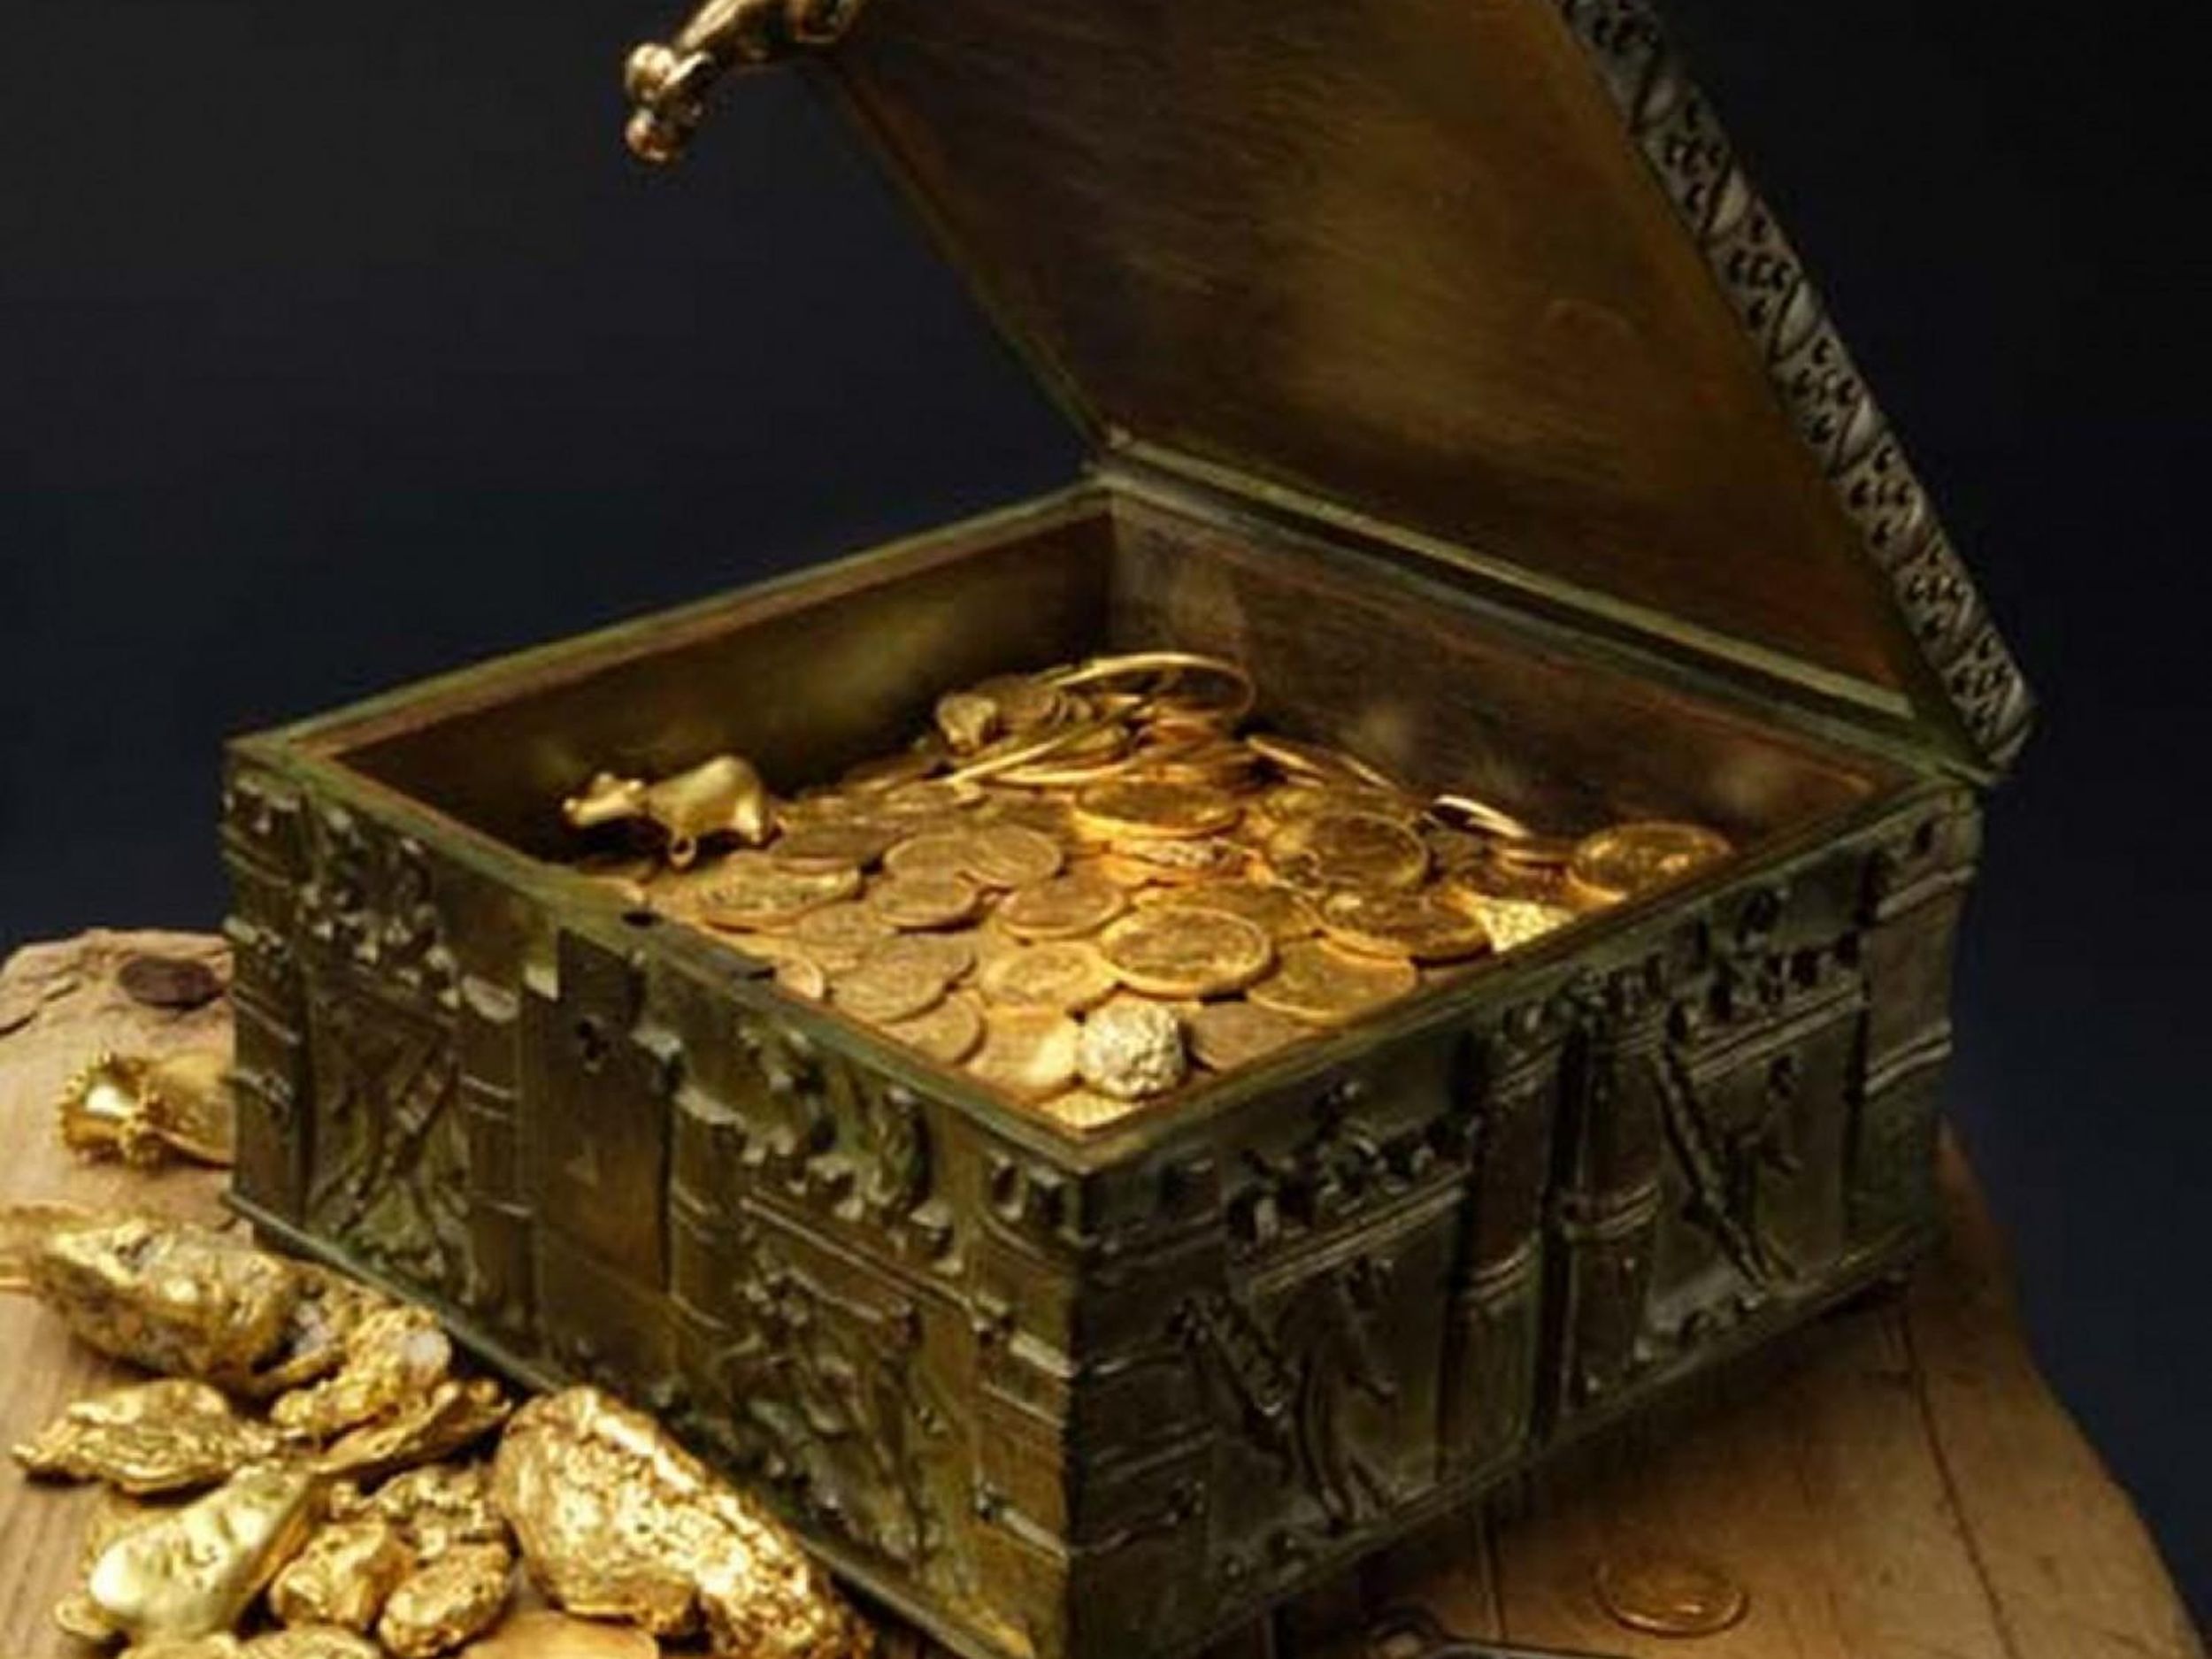 Take treasure. Клад. Сундук с золотыми монетами. Сокровищница. Горы золота и драгоценностей.